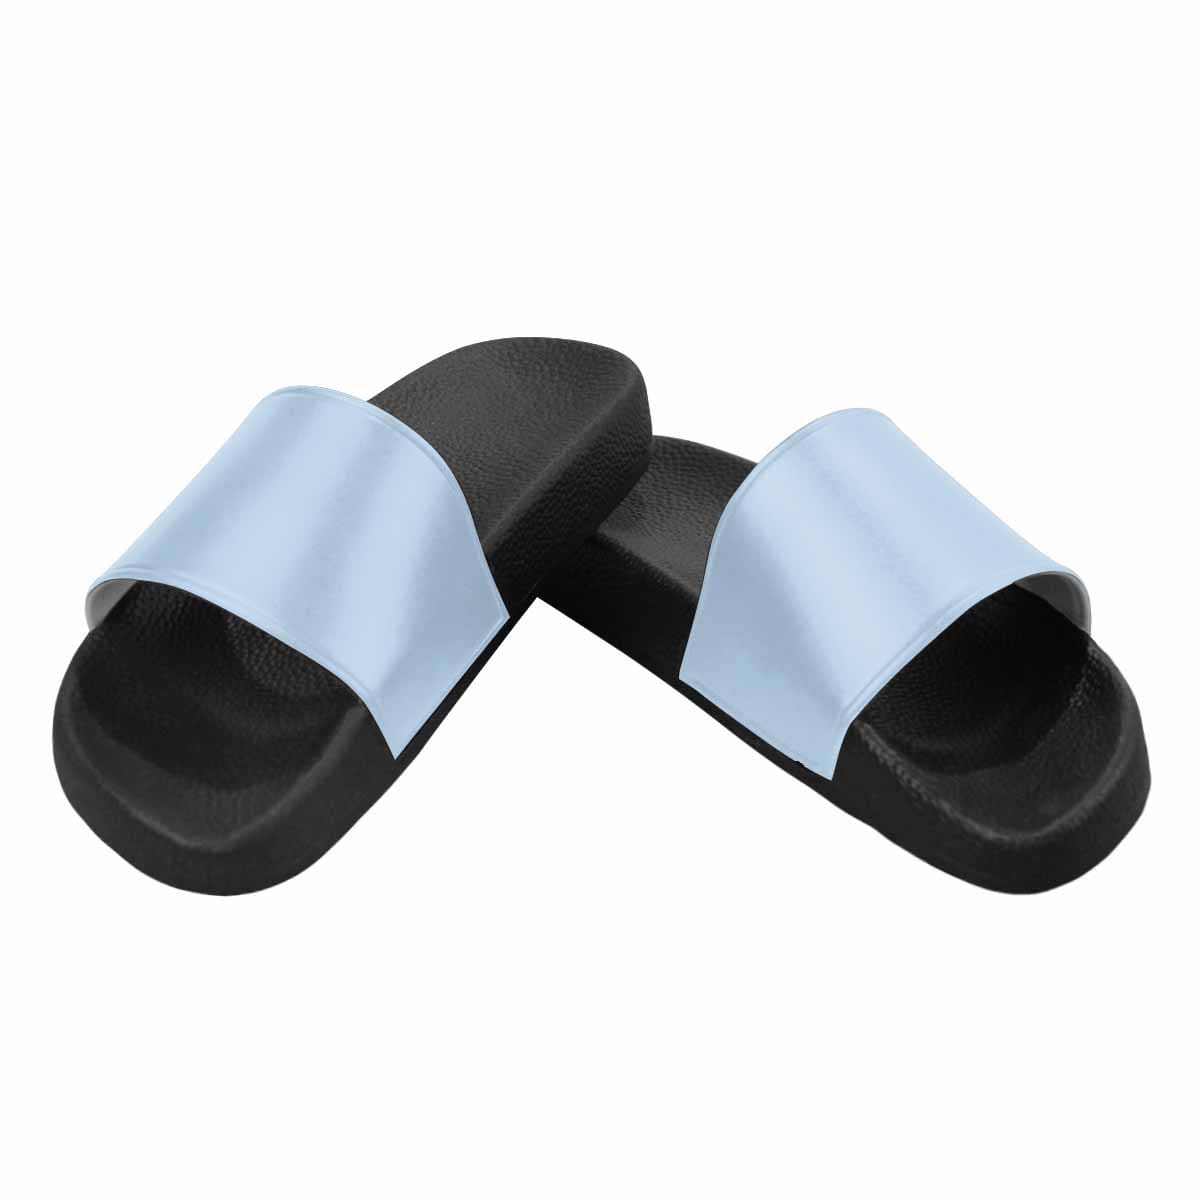 Mens Slide Sandals Serenity Blue Flip Flops - Mens | Slides